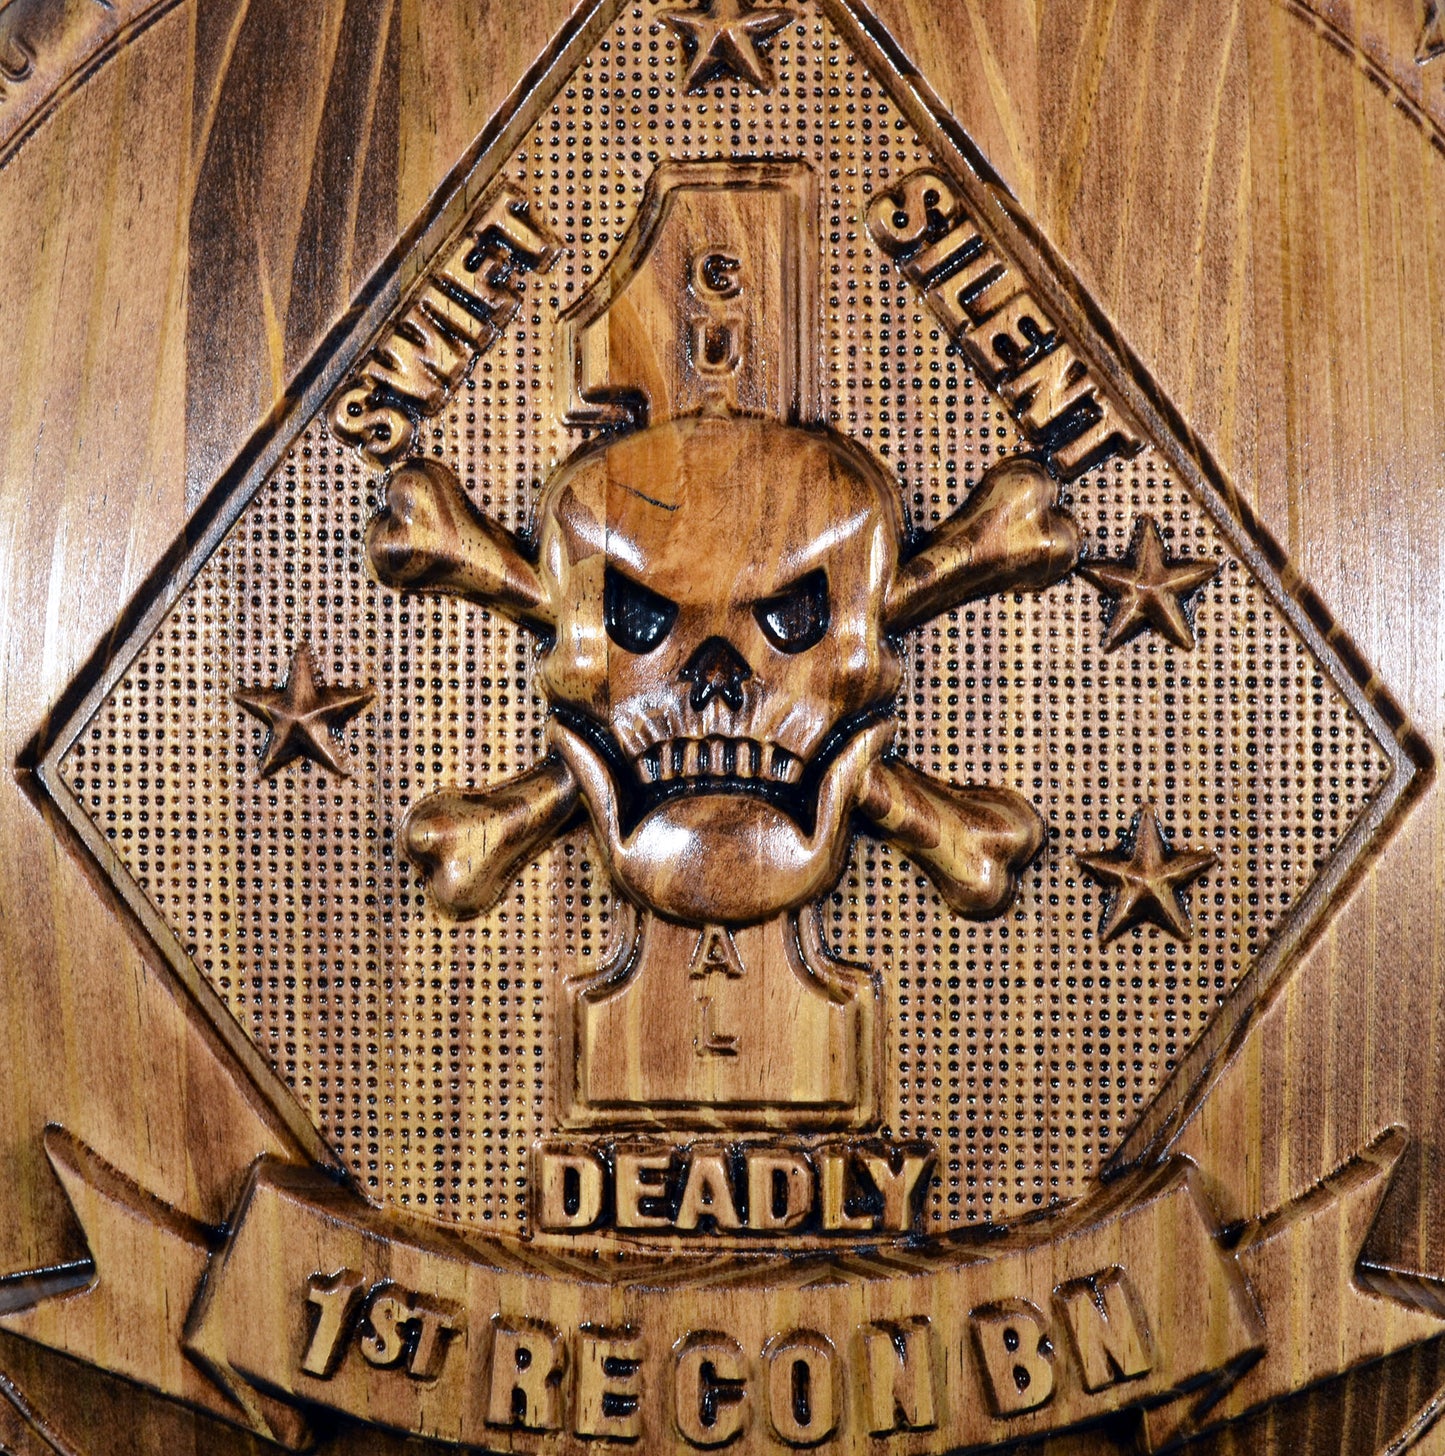 USMC 1st Reconnaissance Battalion, Marine Corps Special Forces, CNC 3d wood carving, military plaque